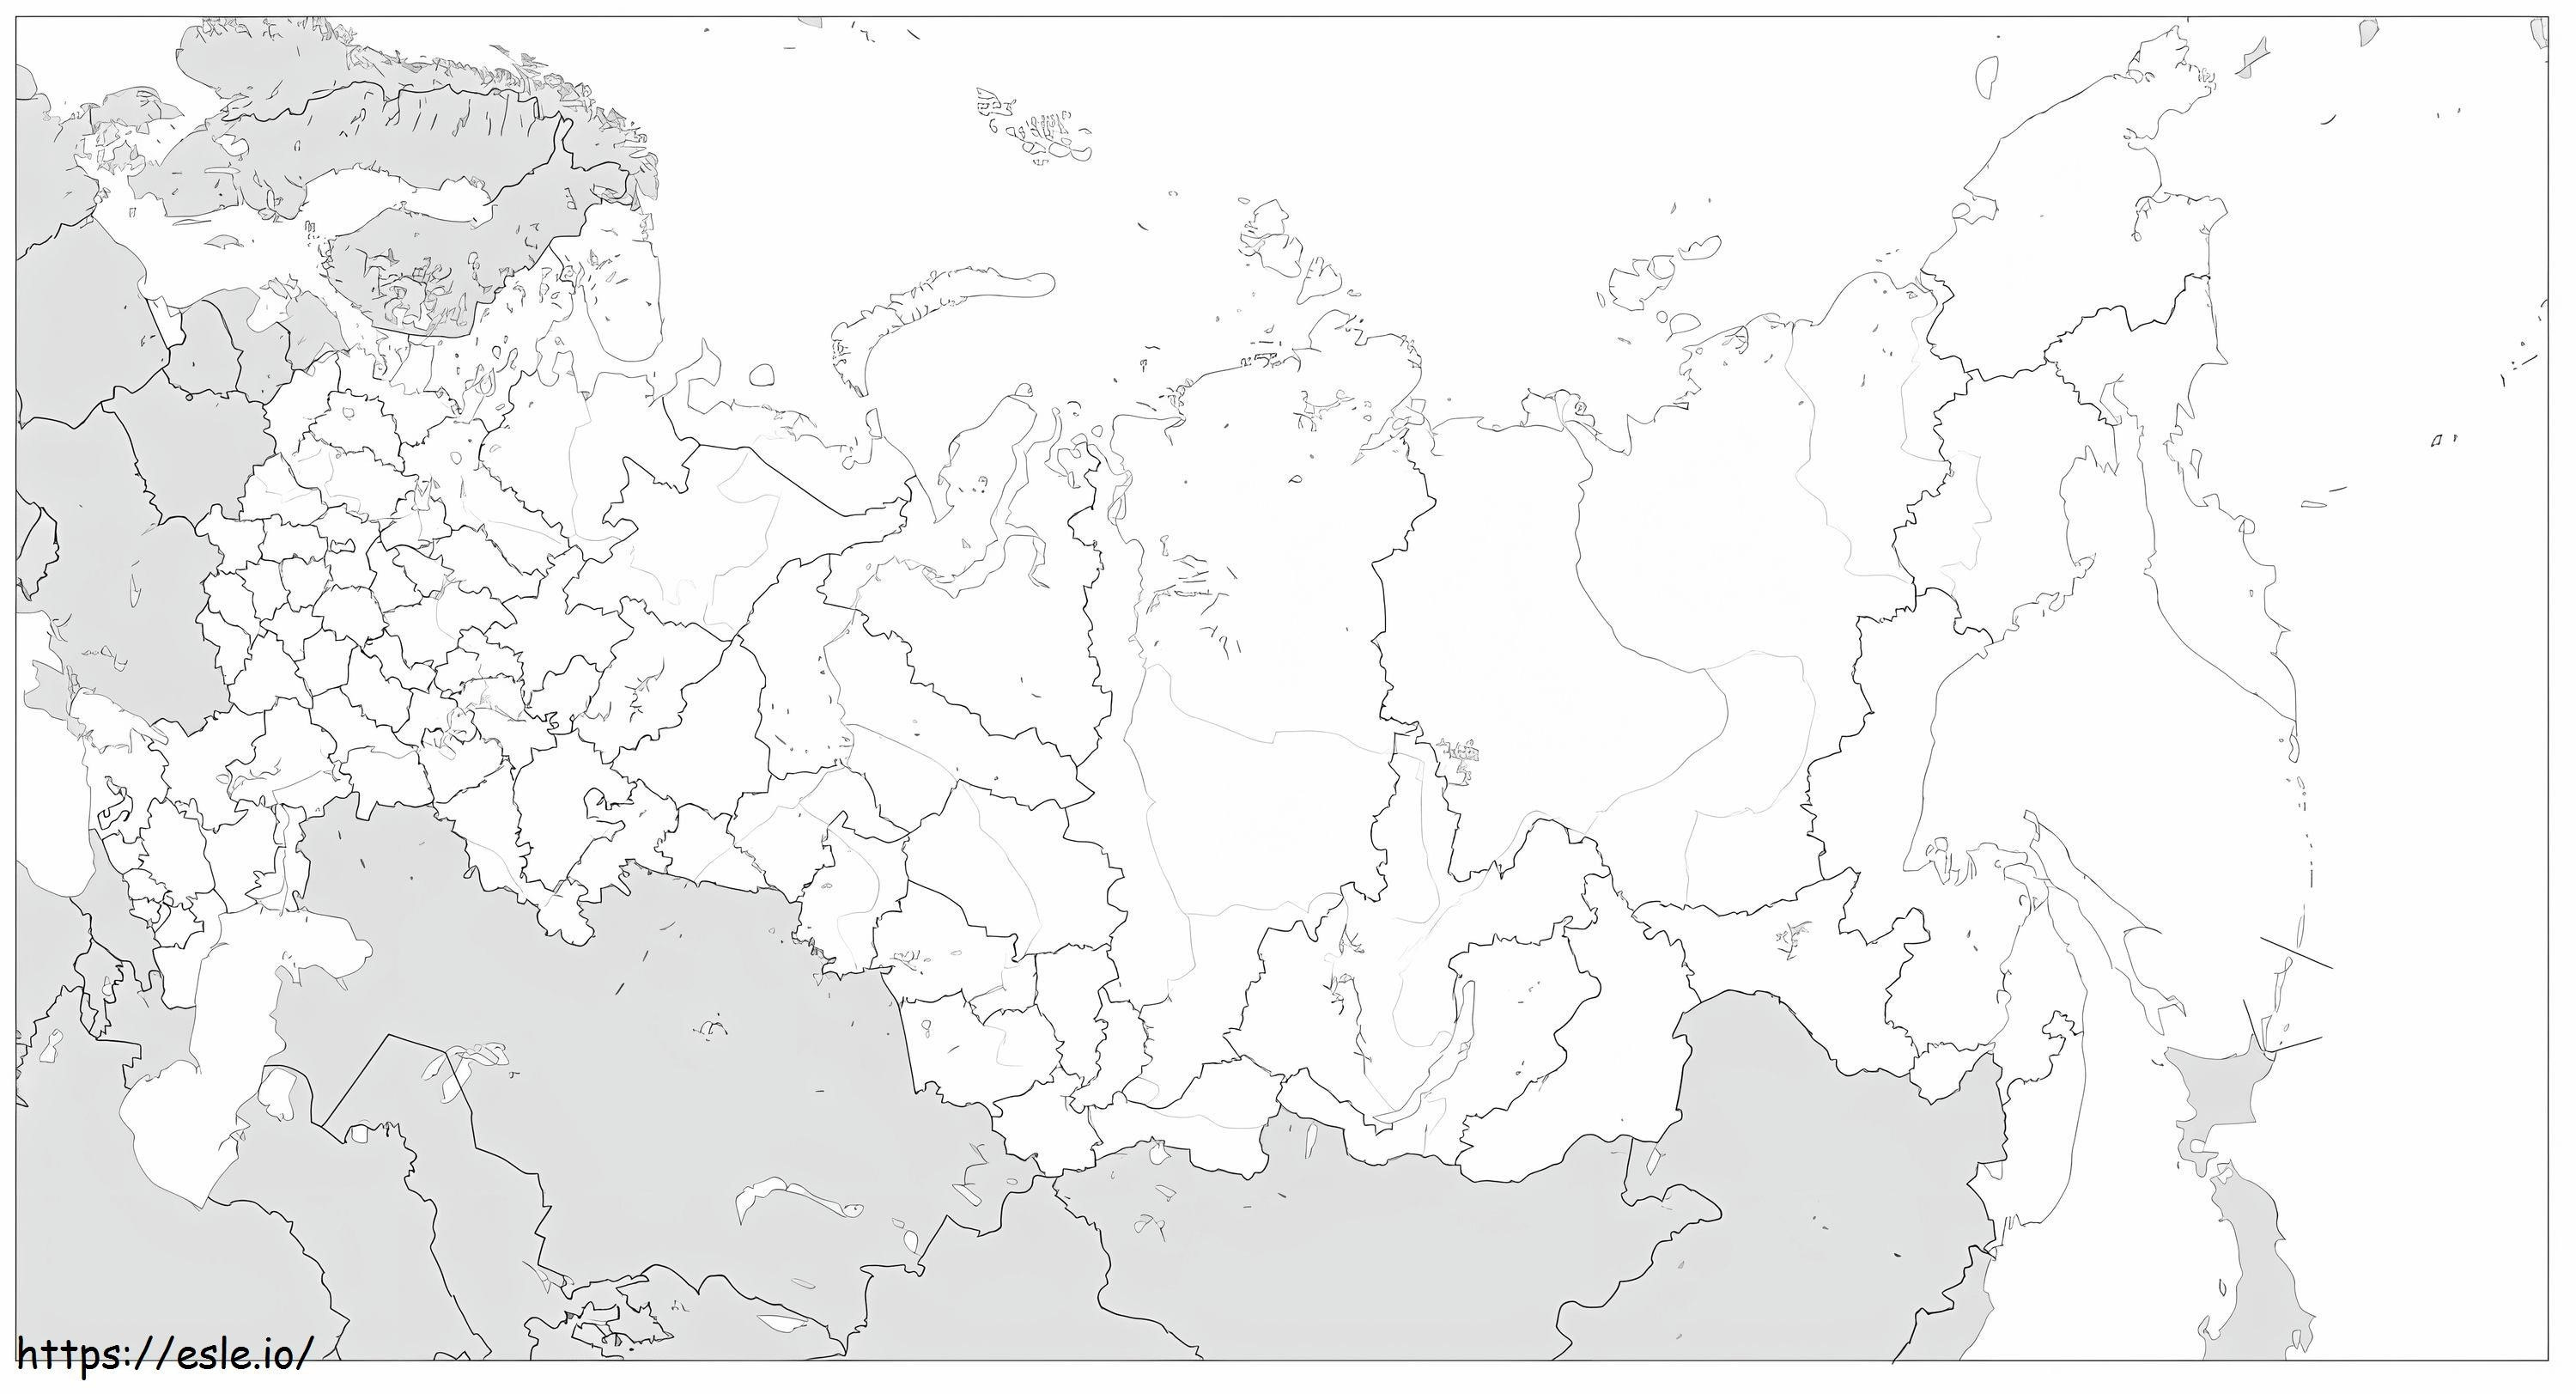 ロシアの地図 1 ぬりえ - 塗り絵